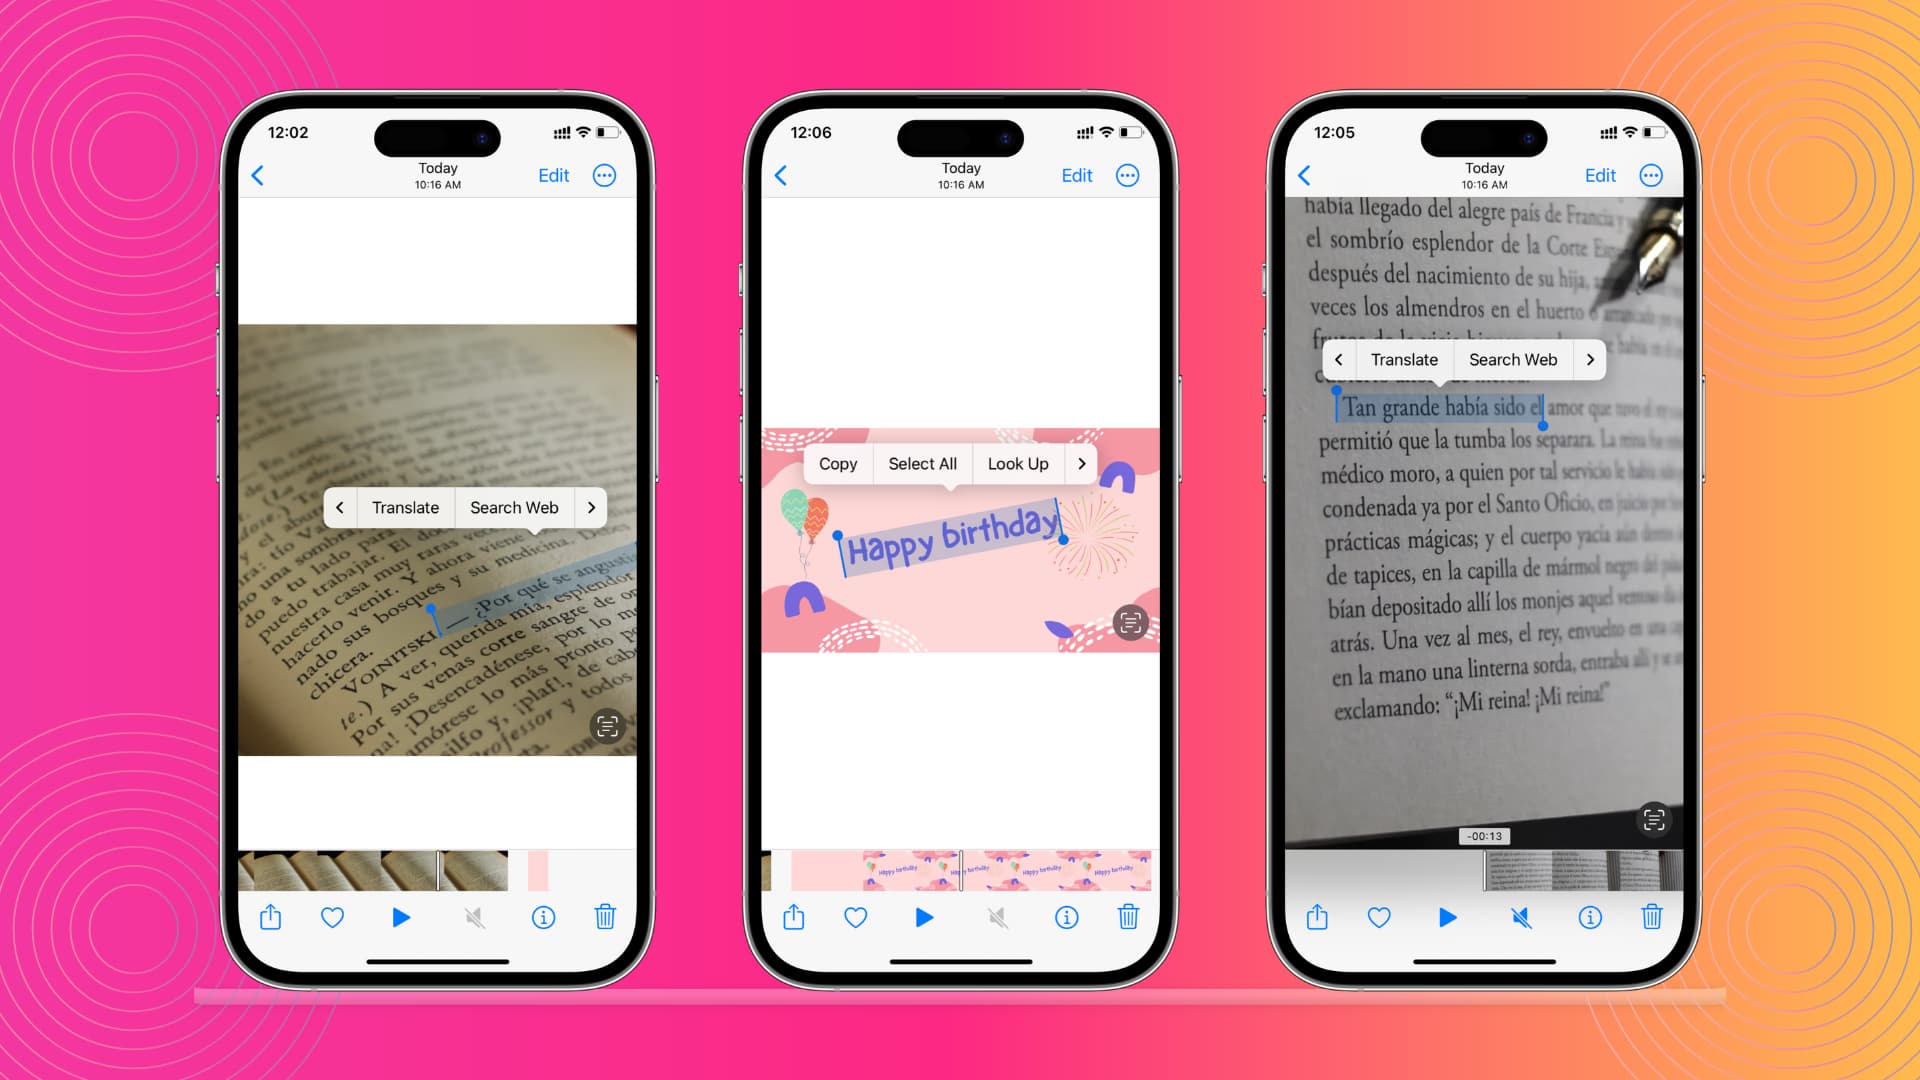 Drei iPhone-Modelle zeigen die Verwendung von Live-Text zum Erkennen und Kopieren, Übersetzen oder Verwenden von Wörtern, Sätzen und Text aus dem Video